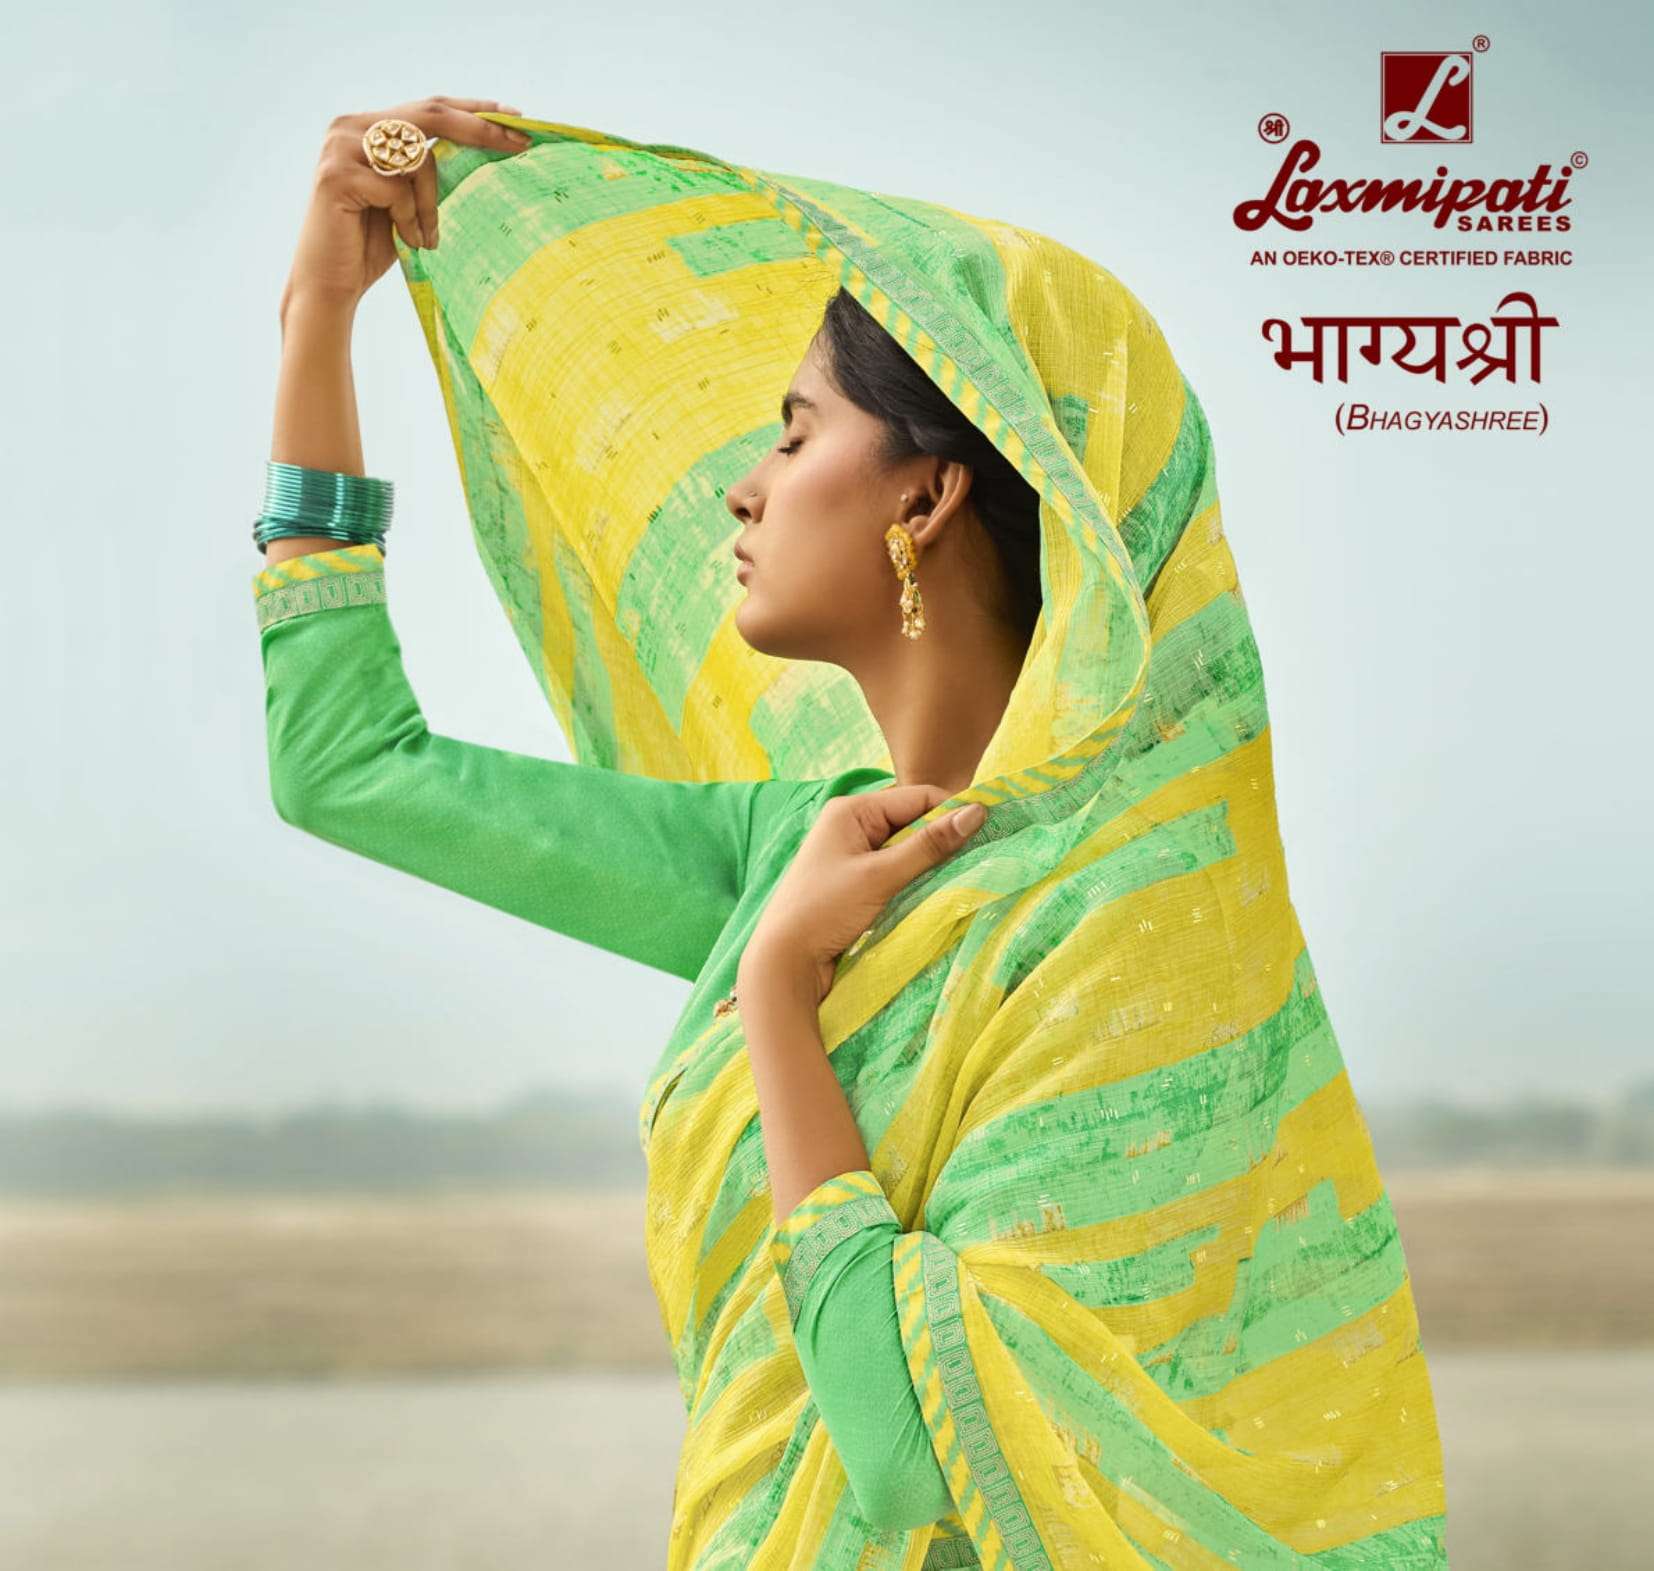 laxmipati sarees bhagyashree 7414 7445 series beautiful saree wholesale price 2022 07 21 16 19 50